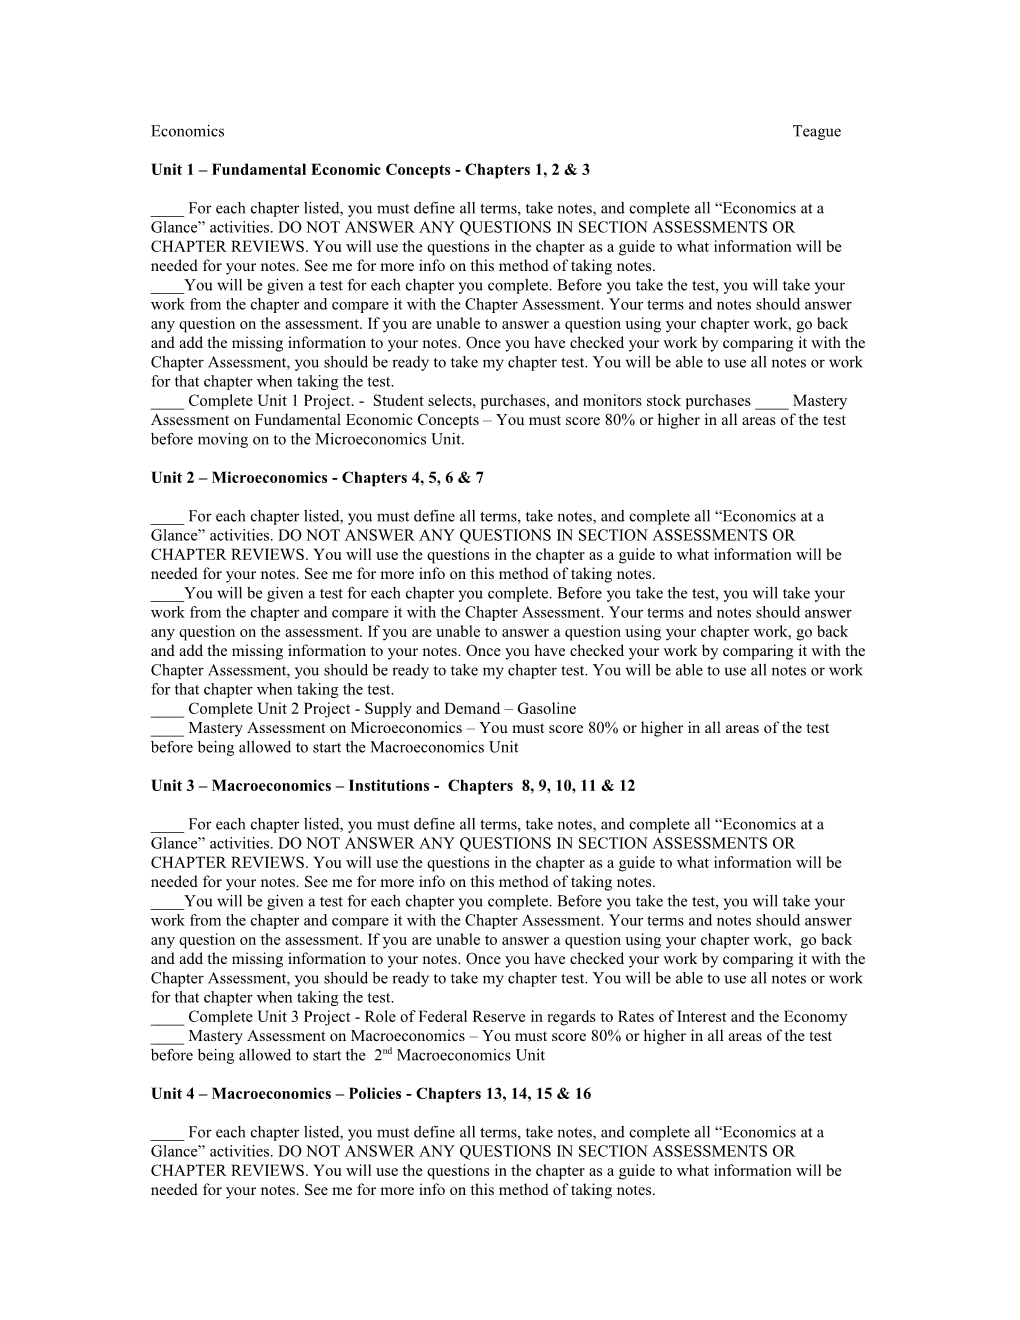 Unit 1 Fundamental Economic Concepts - Chapters 1, 2 & 3